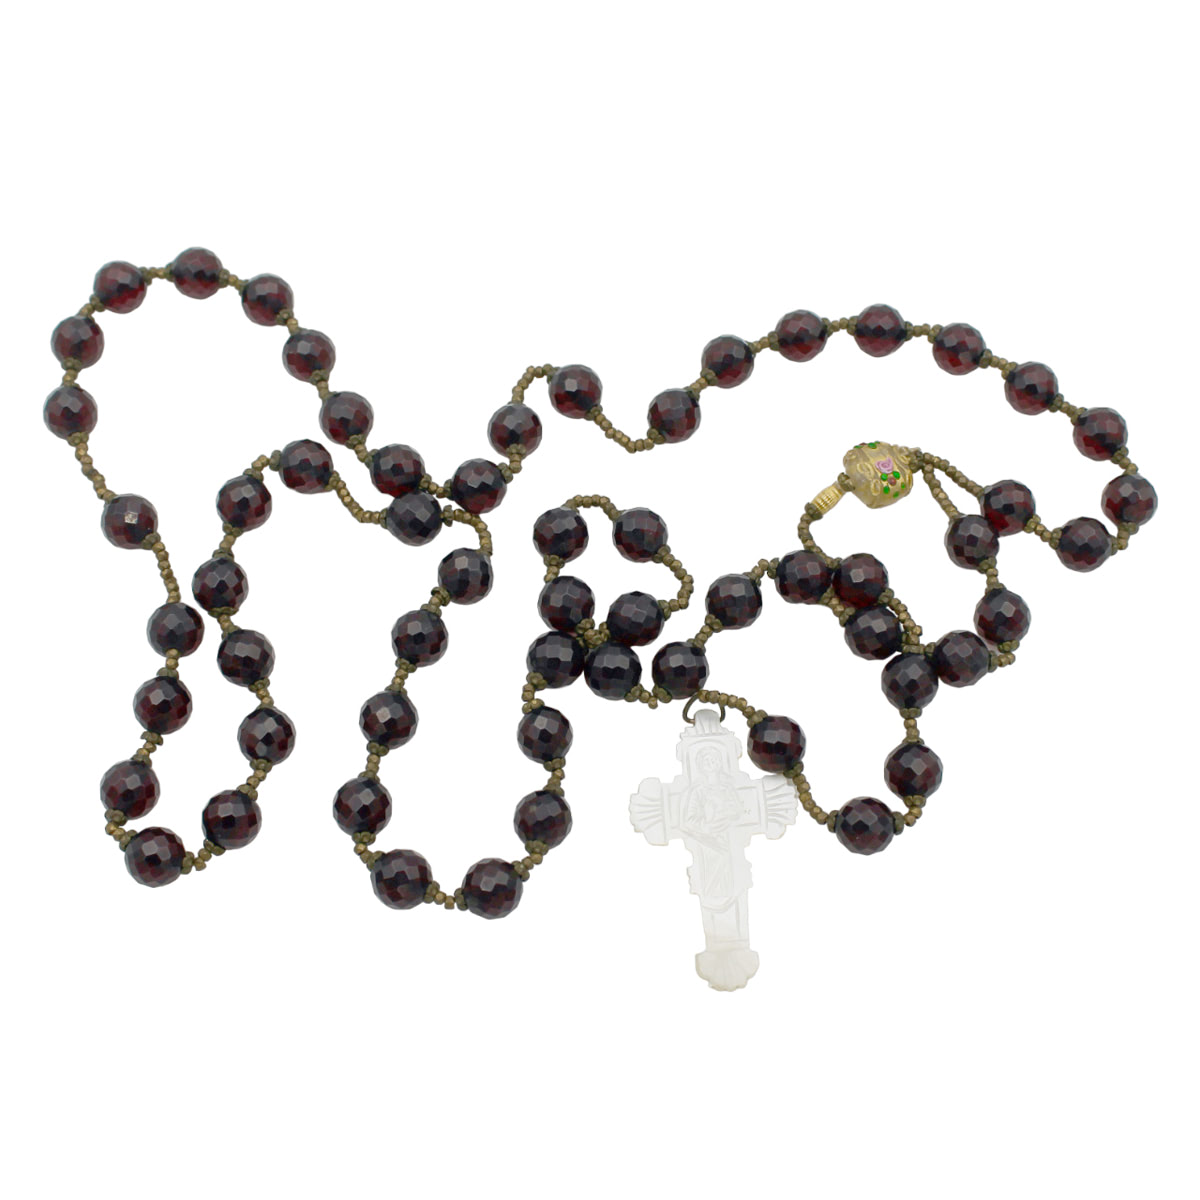 Grande rosario - Large rosary